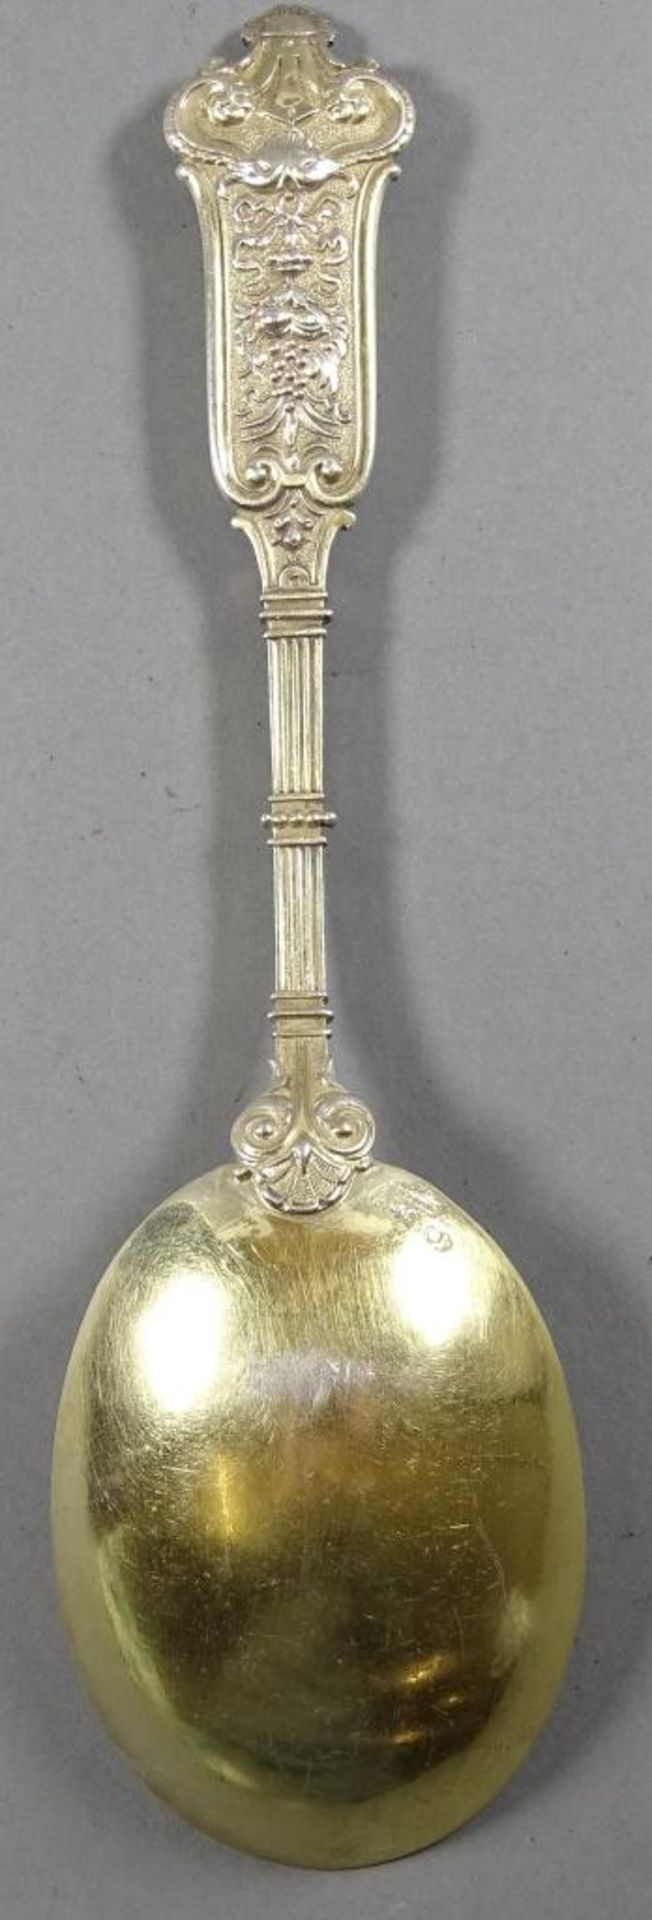 Prunklöffel,Silber -800-,leicht vergoldet,L-20cm, 82,6gr - Bild 4 aus 5